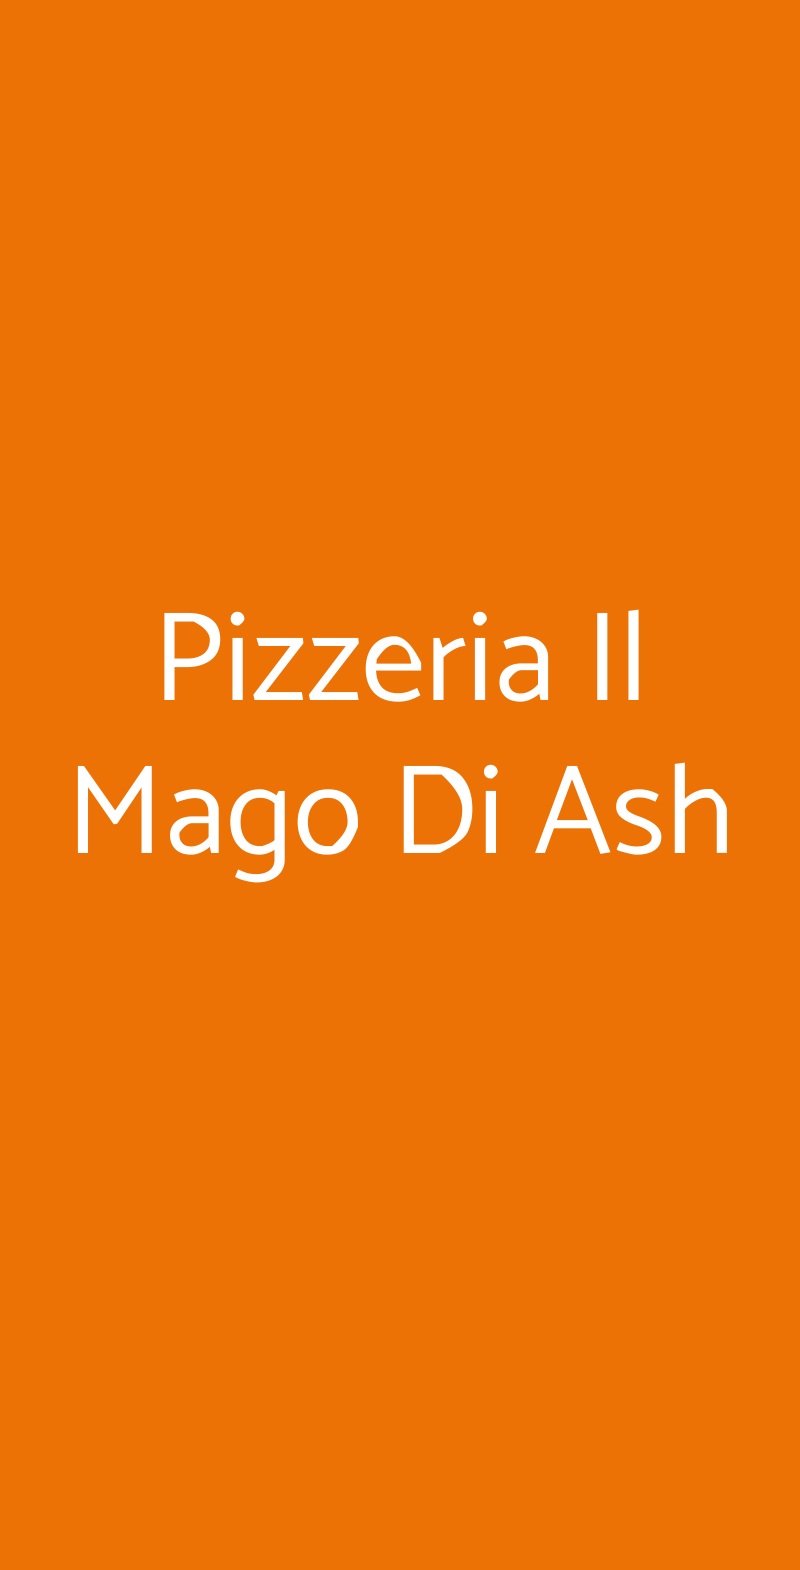 Pizzeria Il Mago Di Ash Marnate menù 1 pagina